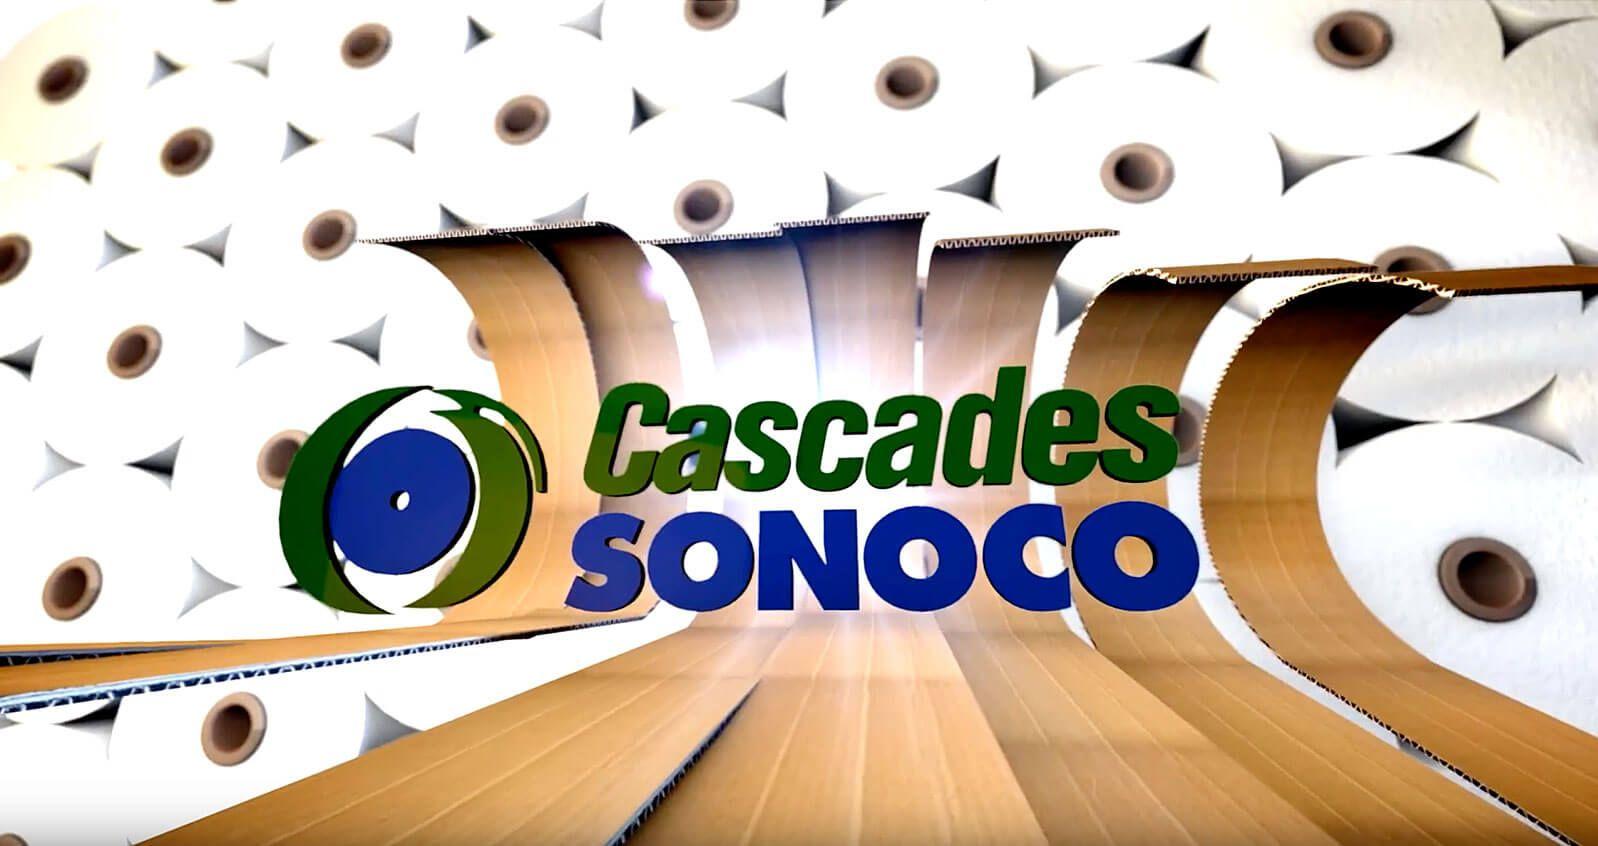 Sonoco Logo - Cascades Sonoco | Cascades Sonoco offers a full range of options for ...